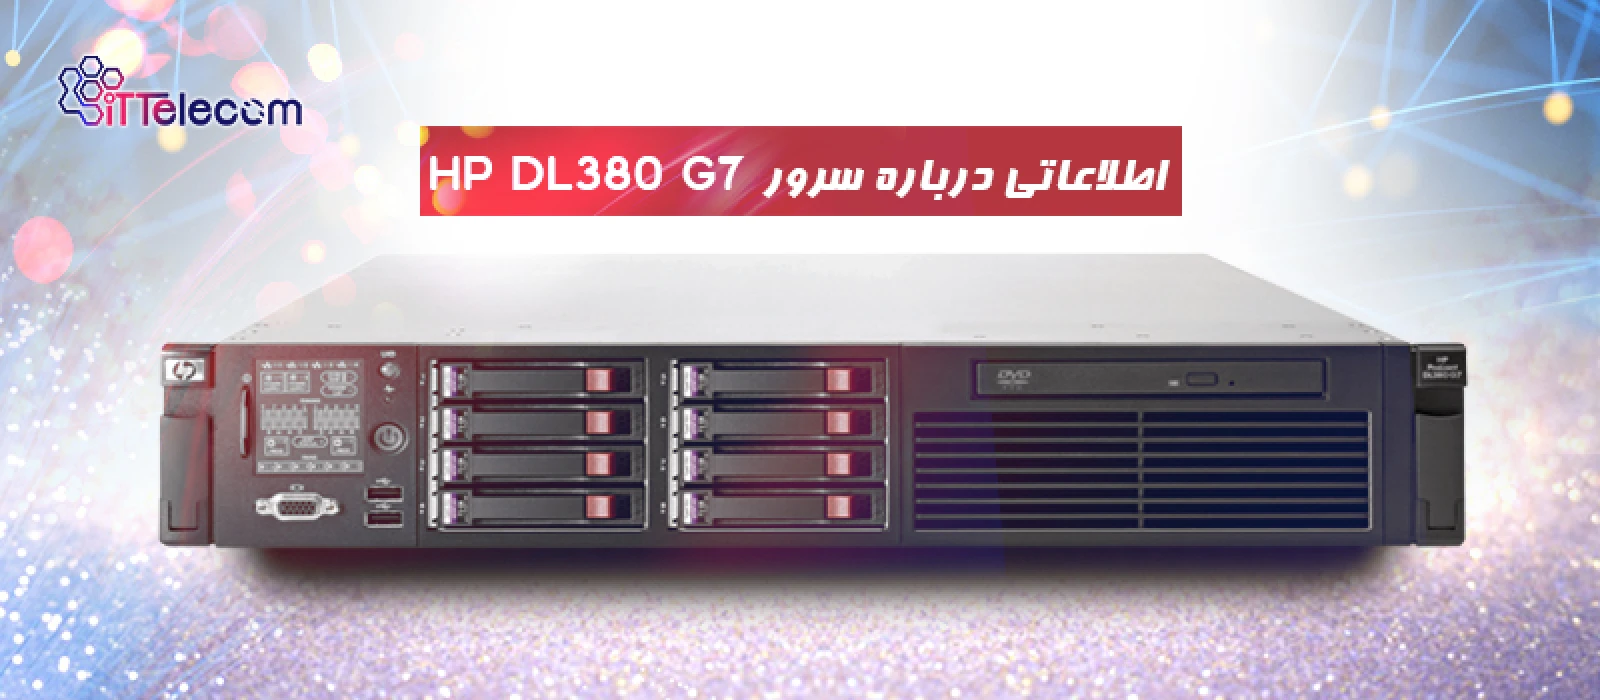 اطلاعاتی درباره سرور HP DL380 G7